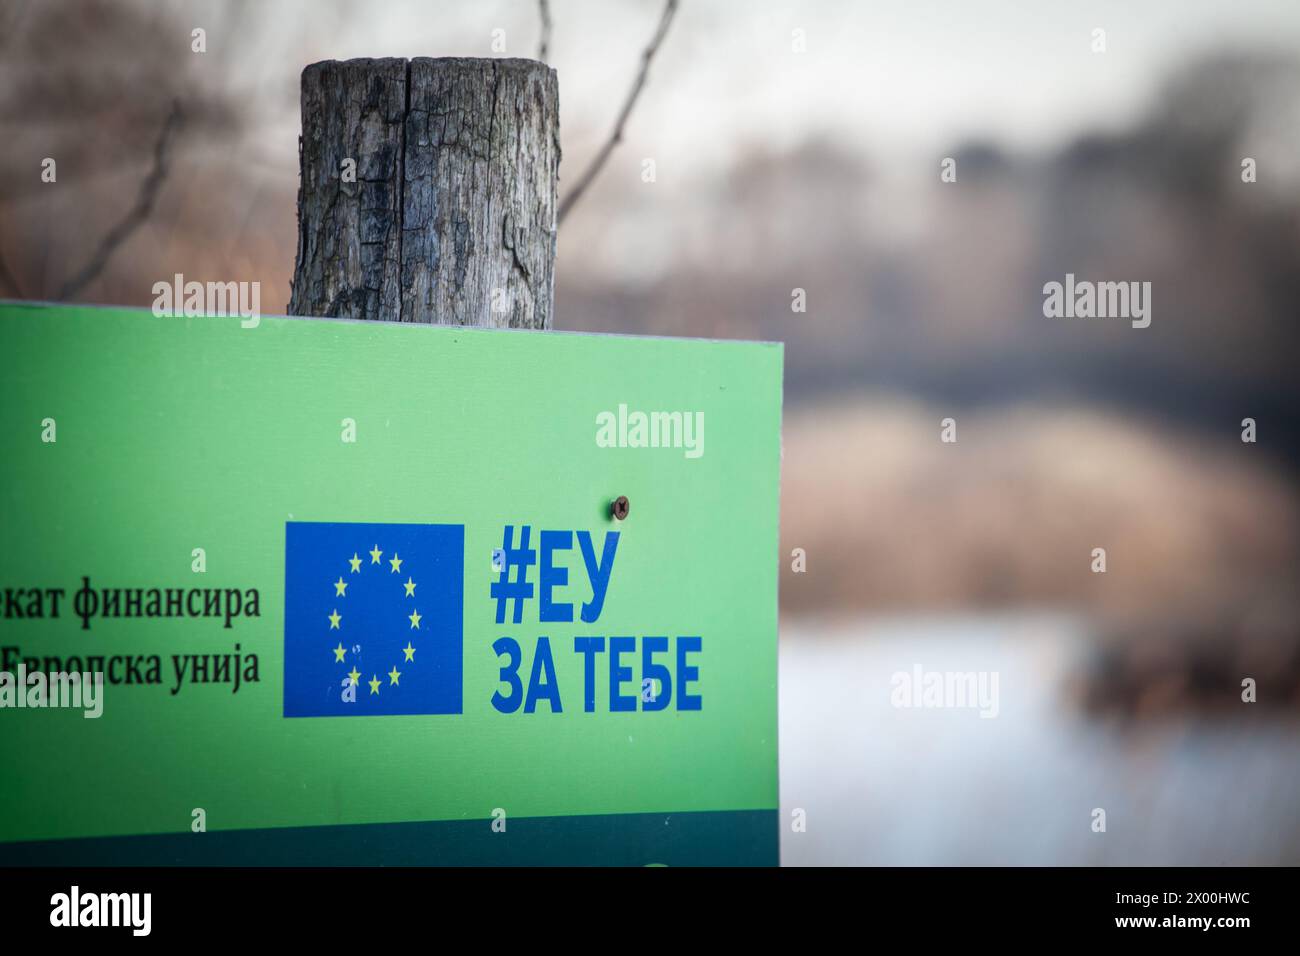 Immagine del logo del programma EU za tebe su un progetto di finanziamento in Serbia, a Belgrado, finanziato dall'unione europea. Foto Stock